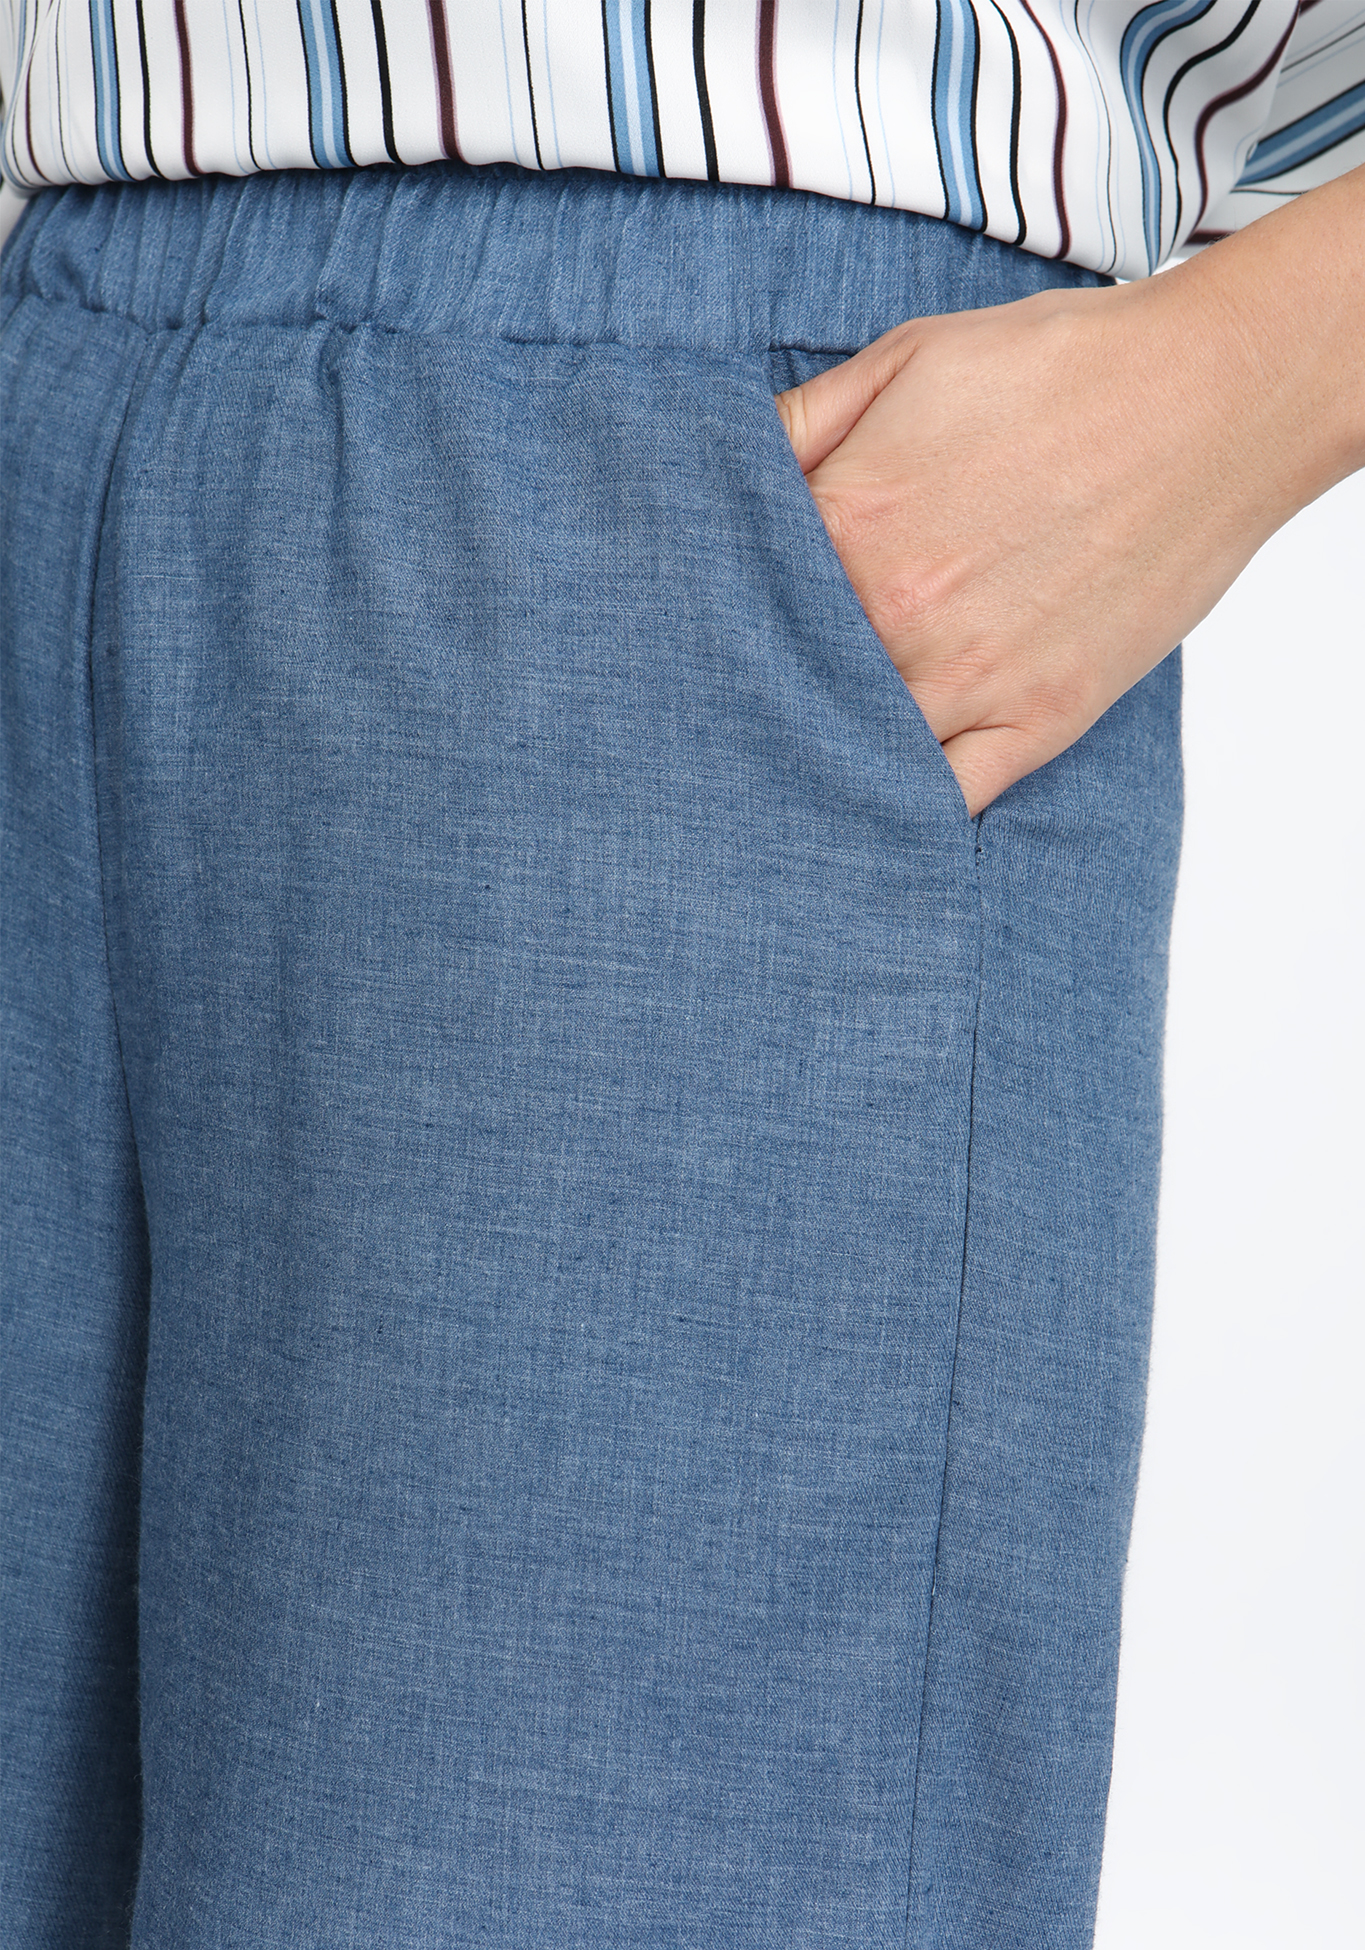 Брюки из хлопка широкого кроя на резинке Elletto Life, размер 54, цвет джинсовый - фото 8